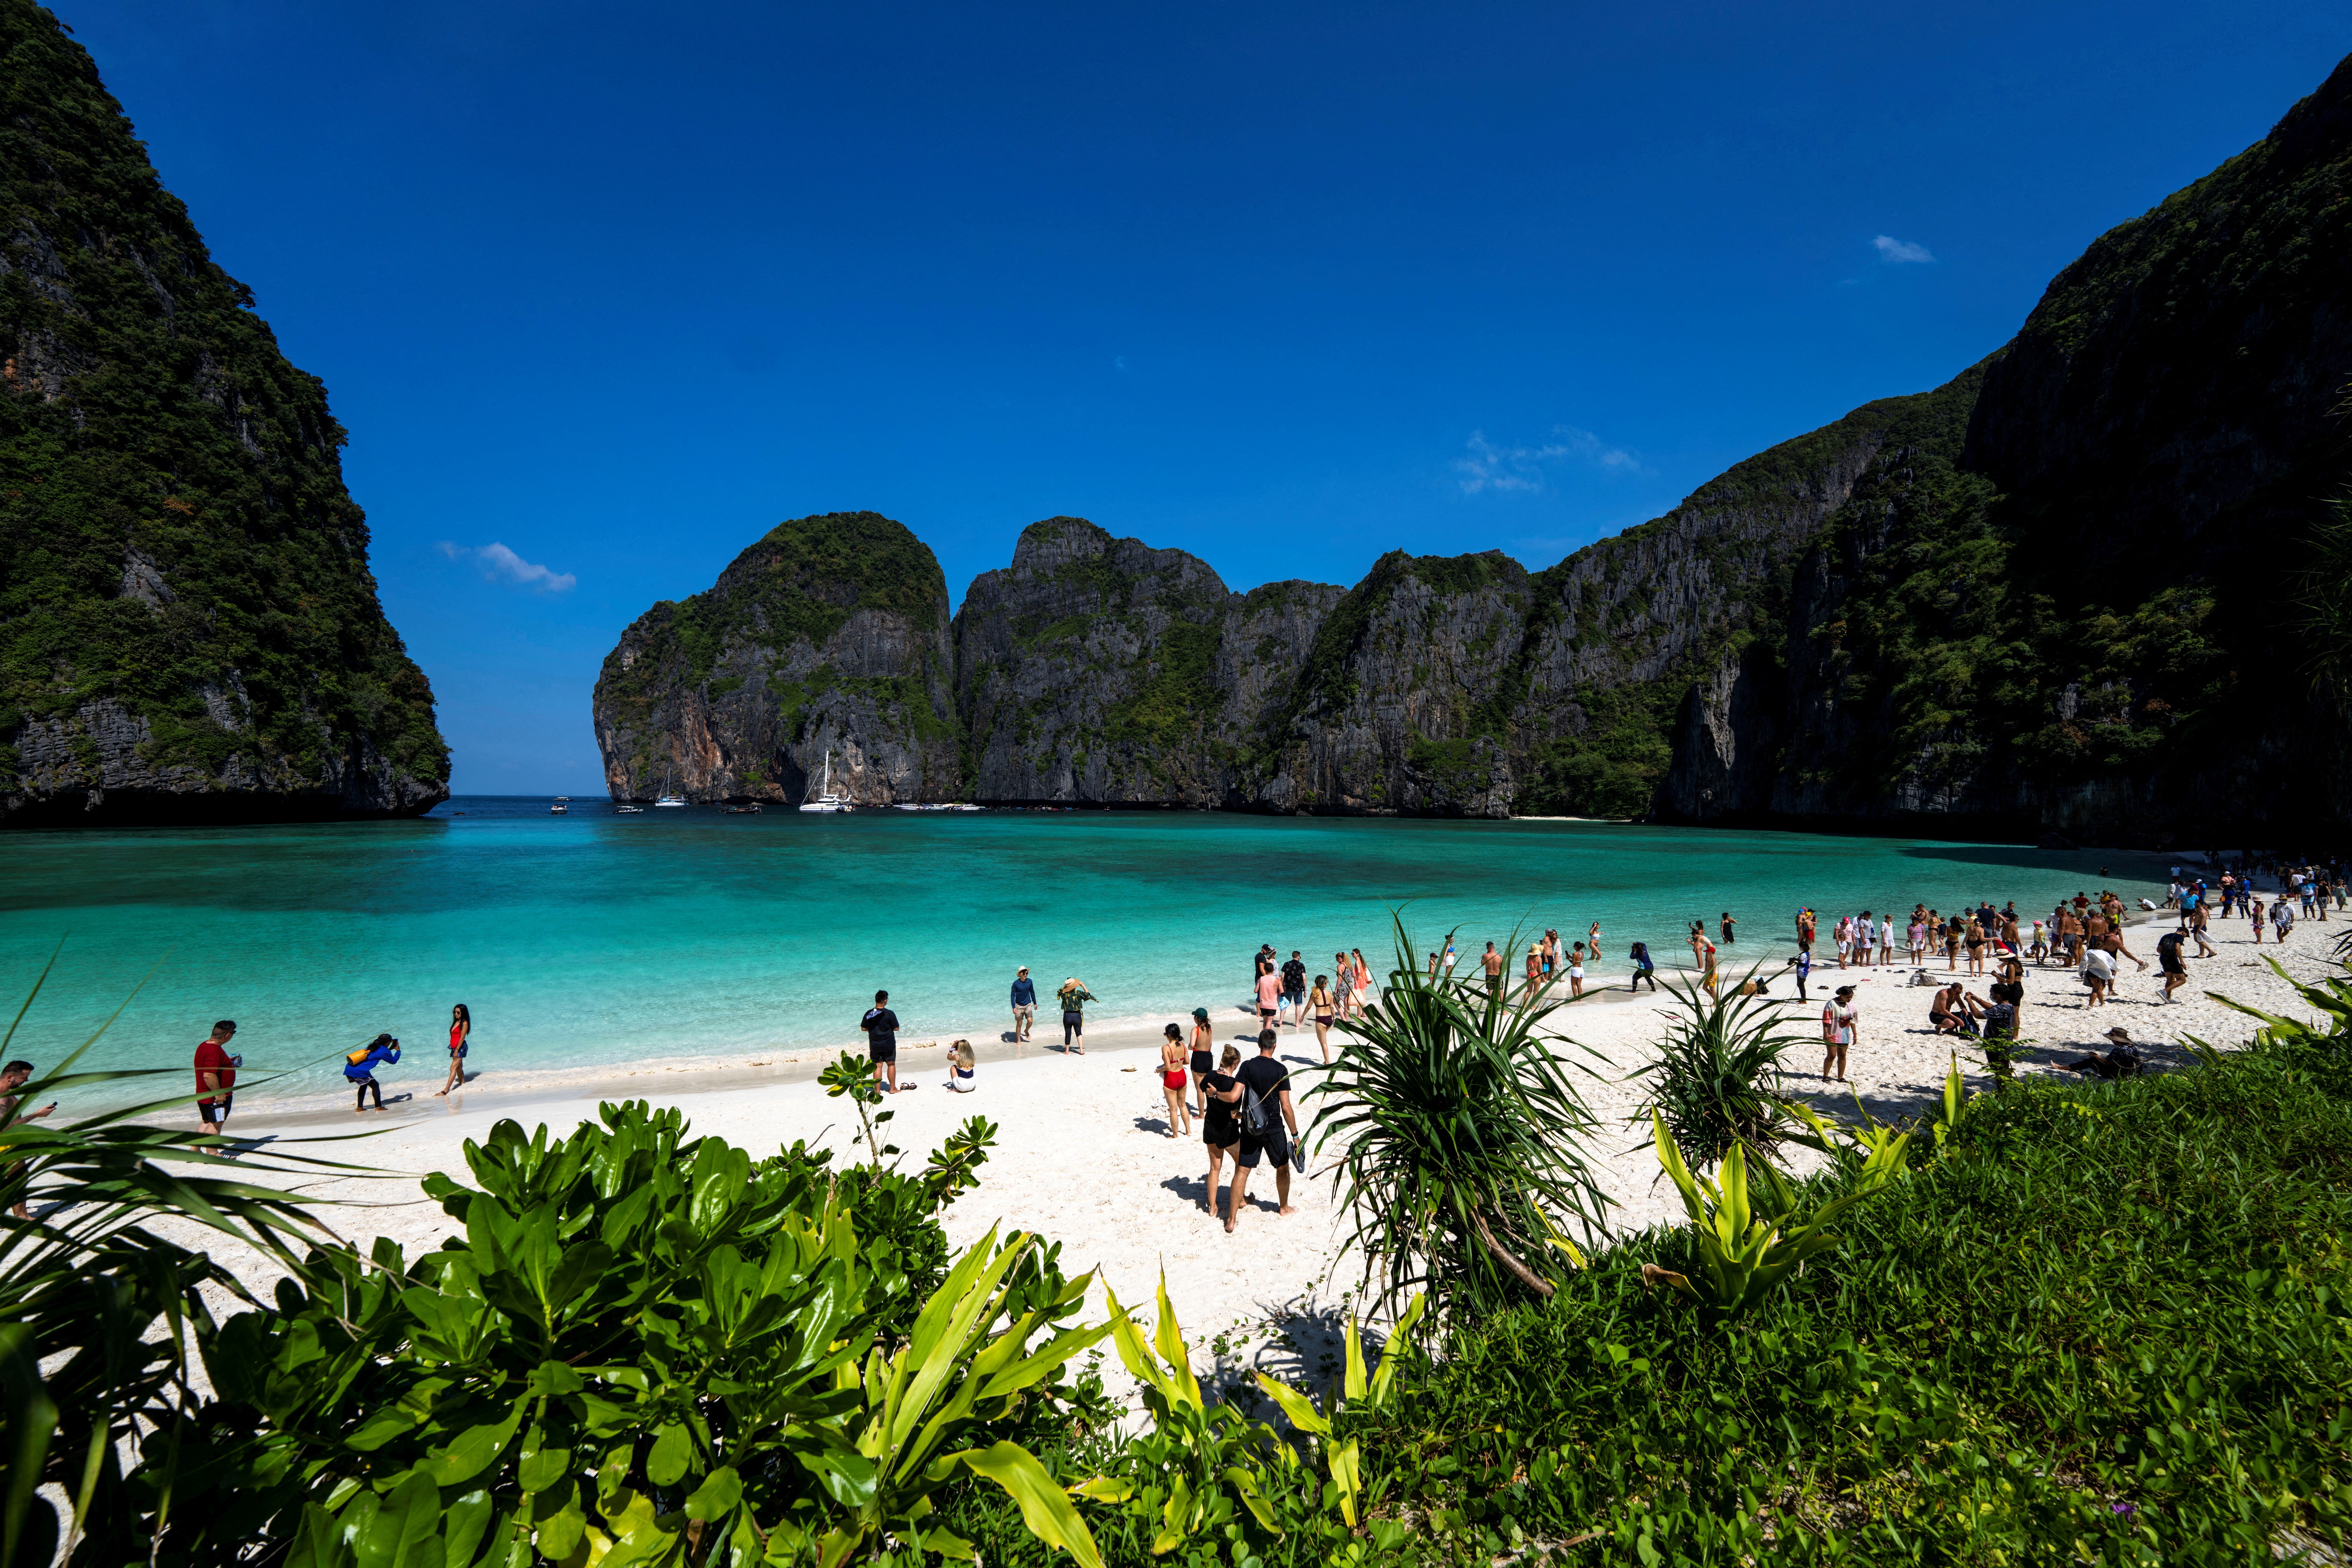 تایلند کجاست؟ راهنمای صفر تا صد سفر به تایلند